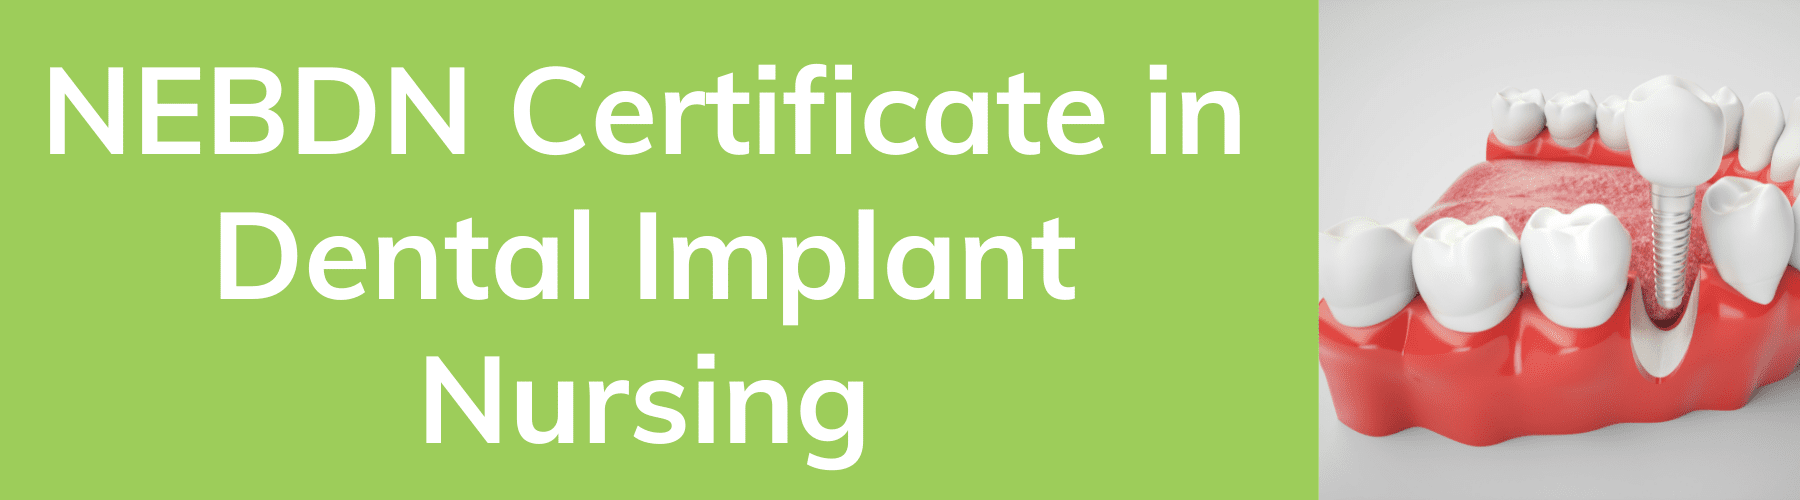 NEBDN Certificate in dental implant nursing.png